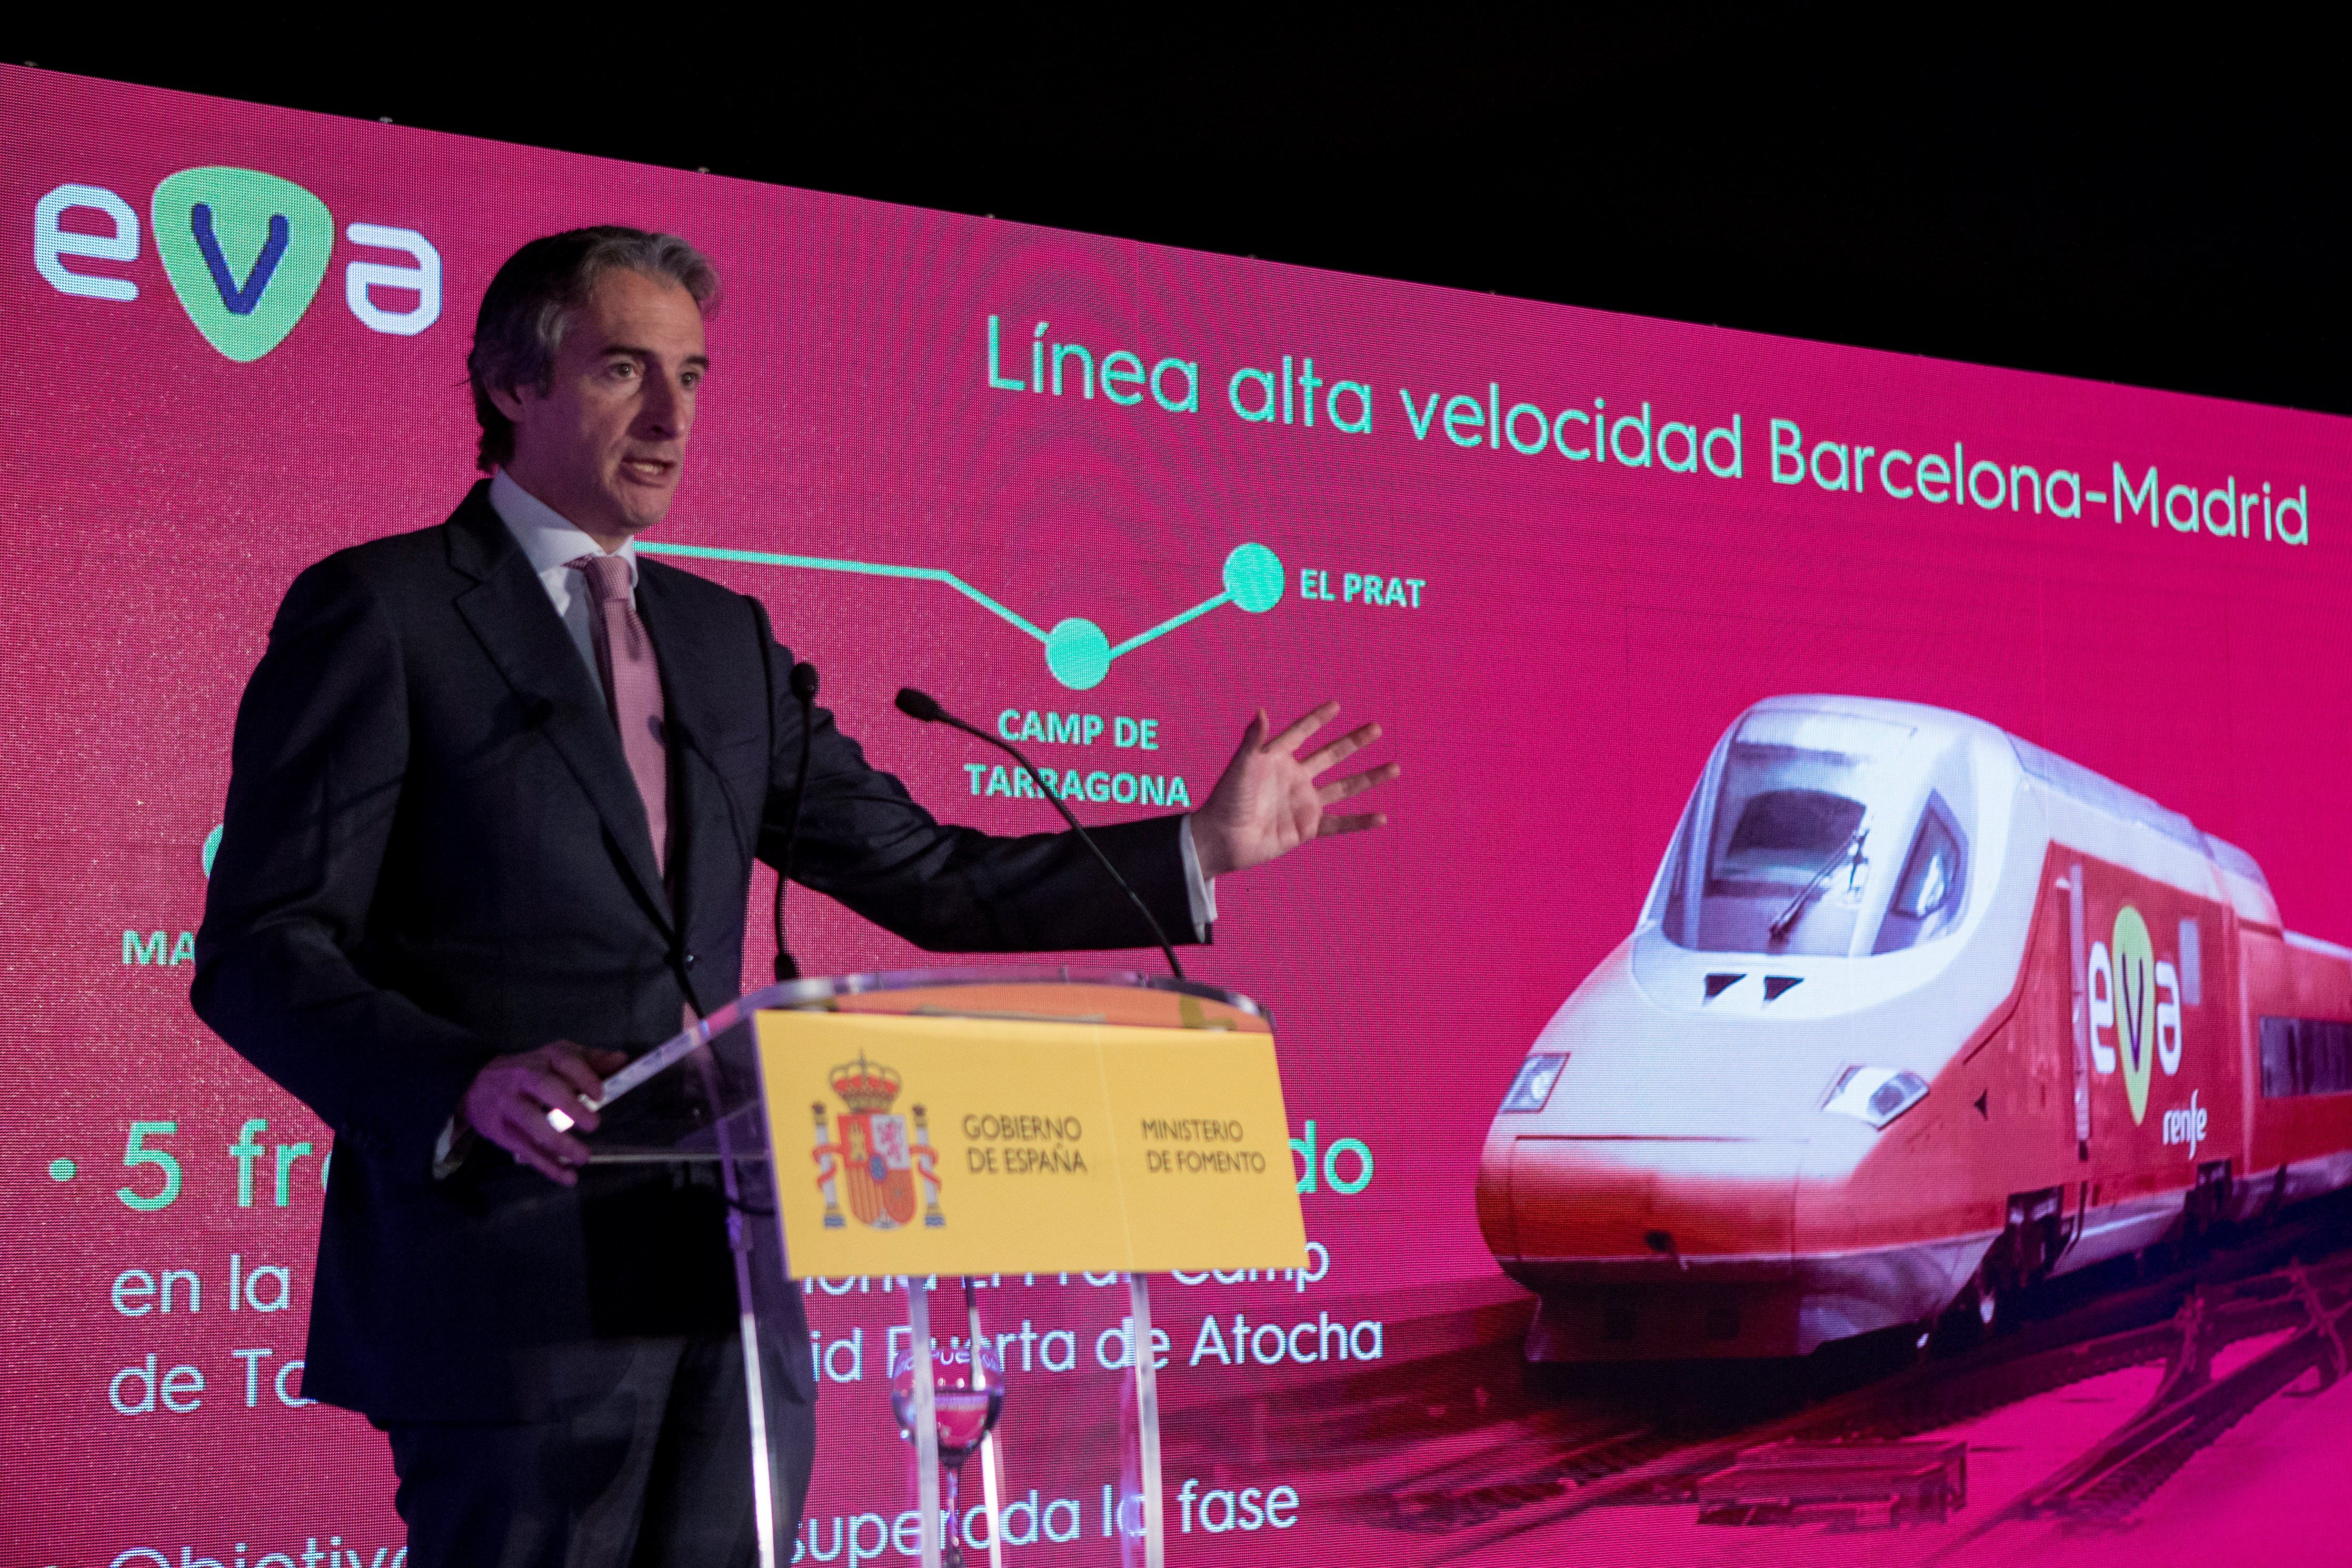 El ministro de Fomento, Íñigo de la Serna, durante la presentación hoy en Barcelona del nuevo servicio de alta velocidad de Renfe en España bautizado con el nombre de EVA